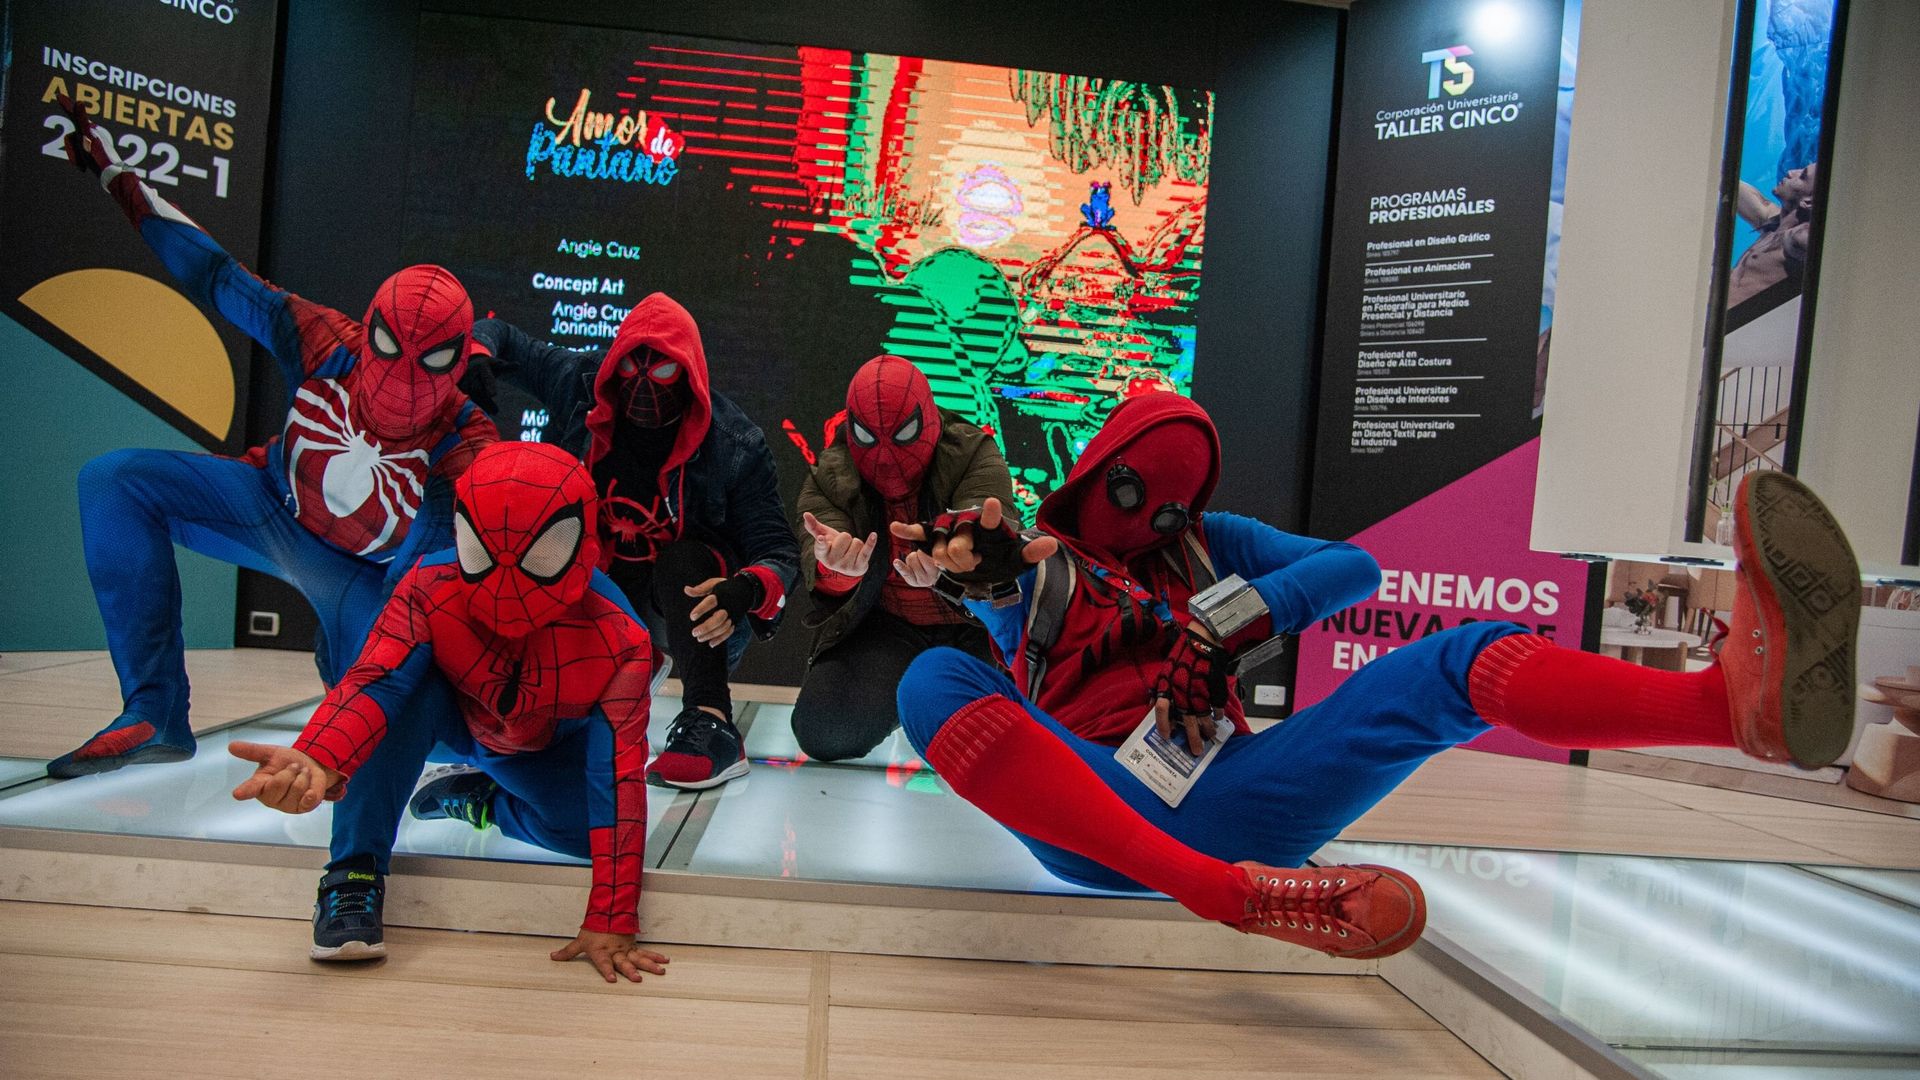 Plusieurs personnes jouent différentes versions de Spider Man, le super-héros de Marvel, lors de la dernière journée du SOFA (Salon del Ocio y la Fantasia) 2021, une foire destinée au public geek de Colombie qui réunit des fans de Cosplay, de jeux, de sup